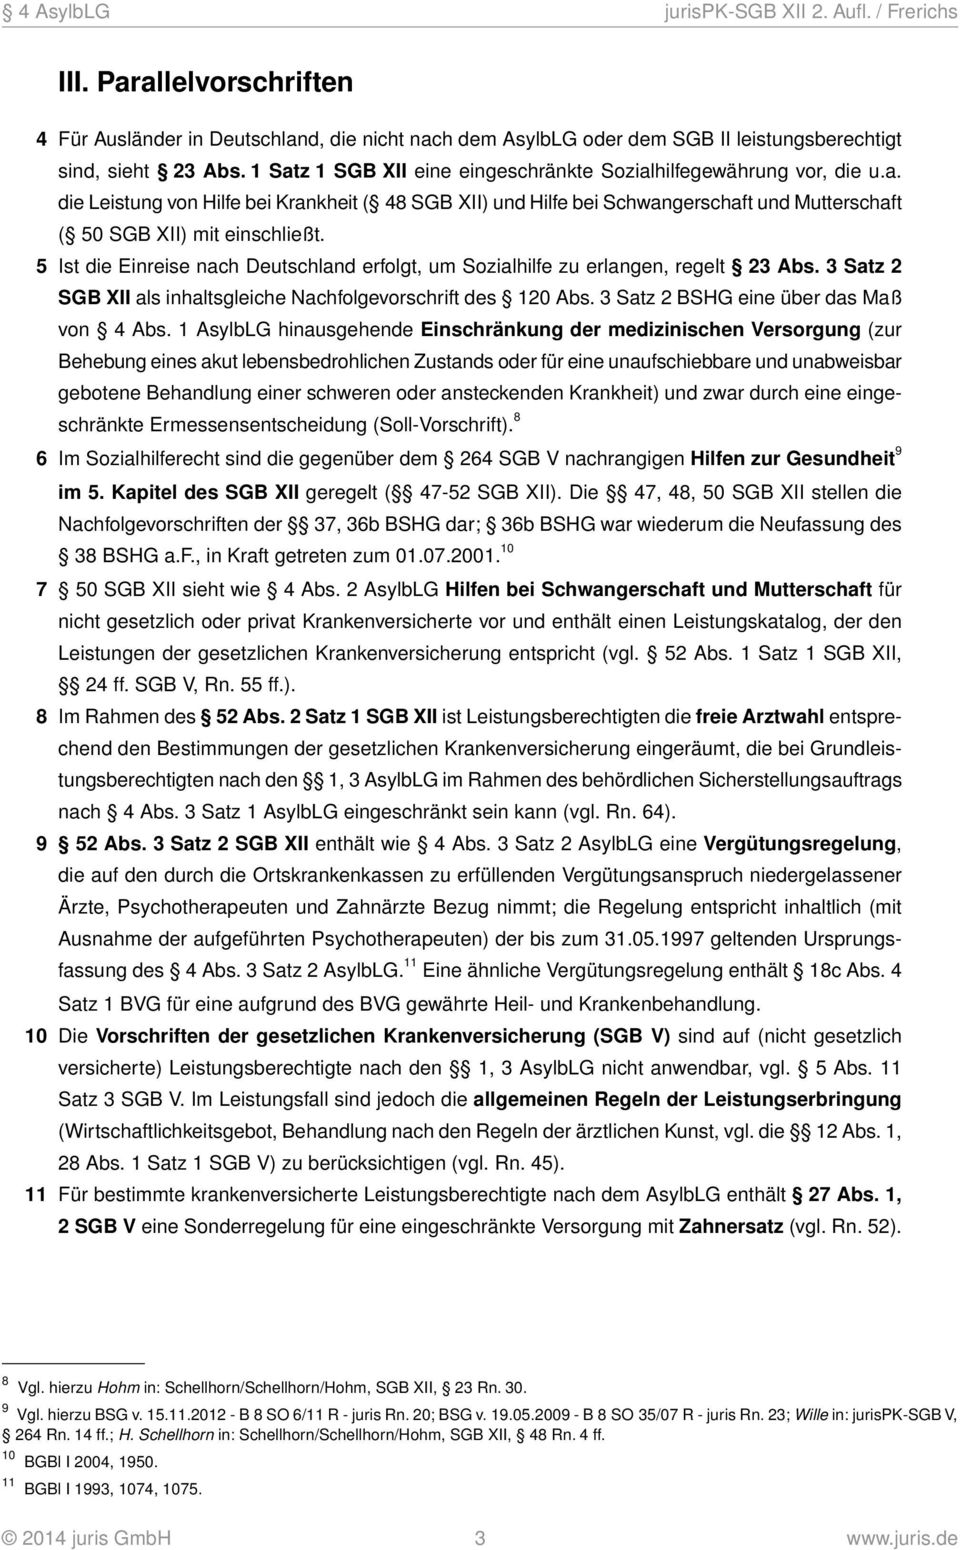 Ist die Einreise nach Deutschland erfolgt, um Sozialhilfe zu erlangen, regelt 23 Abs. 3 Satz 2 SGB XII als inhaltsgleiche Nachfolgevorschrift des 120 Abs. 3 Satz 2 BSHG eine über das Maß von 4 Abs.